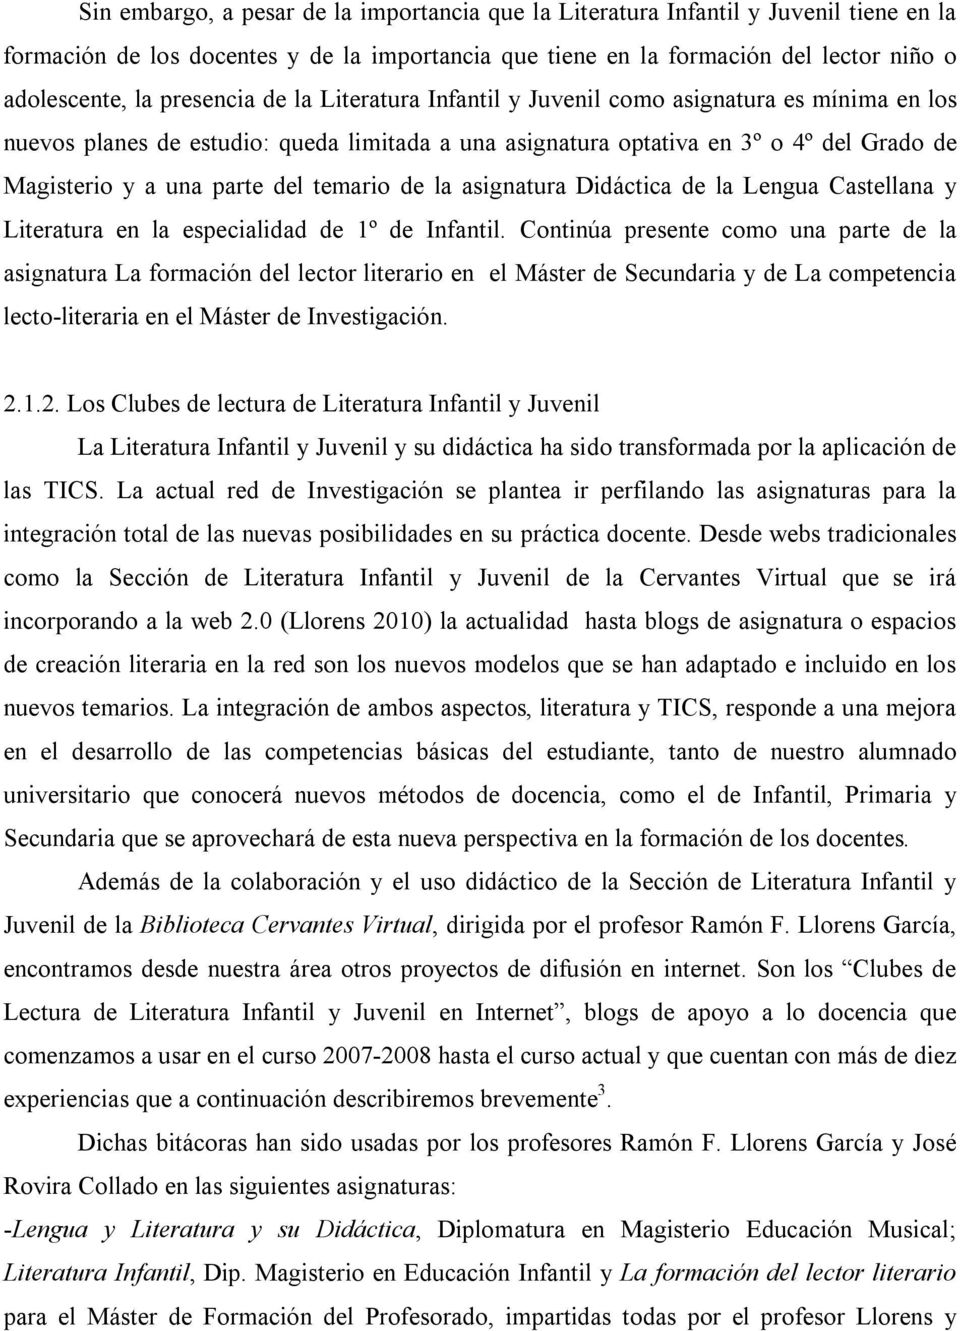 temario de la asignatura Didáctica de la Lengua Castellana y Literatura en la especialidad de 1º de Infantil.